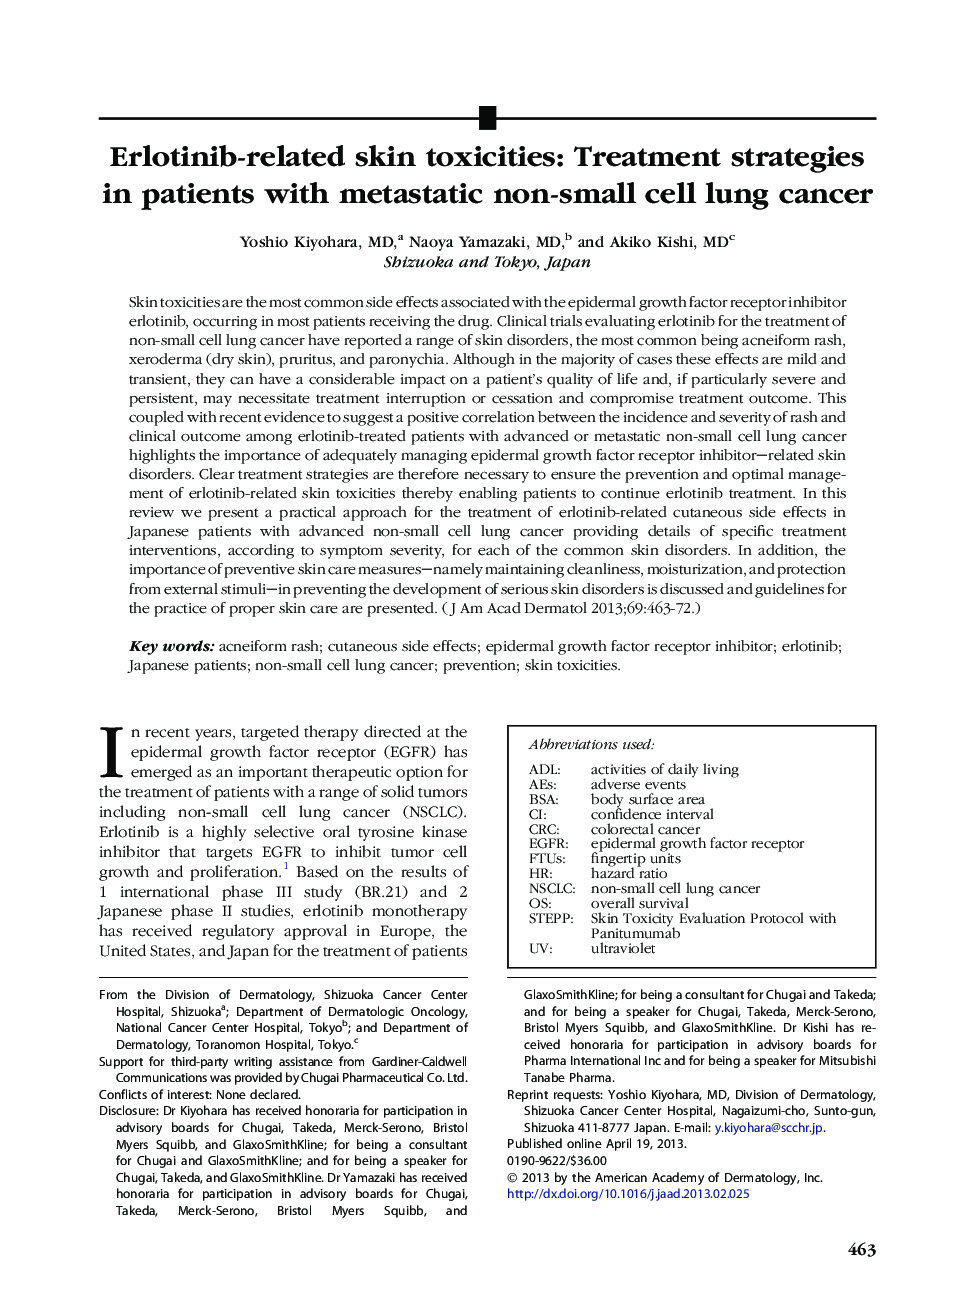 سمیت های پوستی مرتبط با ارلتینیب: استراتژی های درمان در بیماران مبتلا به سرطان ریه غیر متاستاتیک سلول های بنیادی 